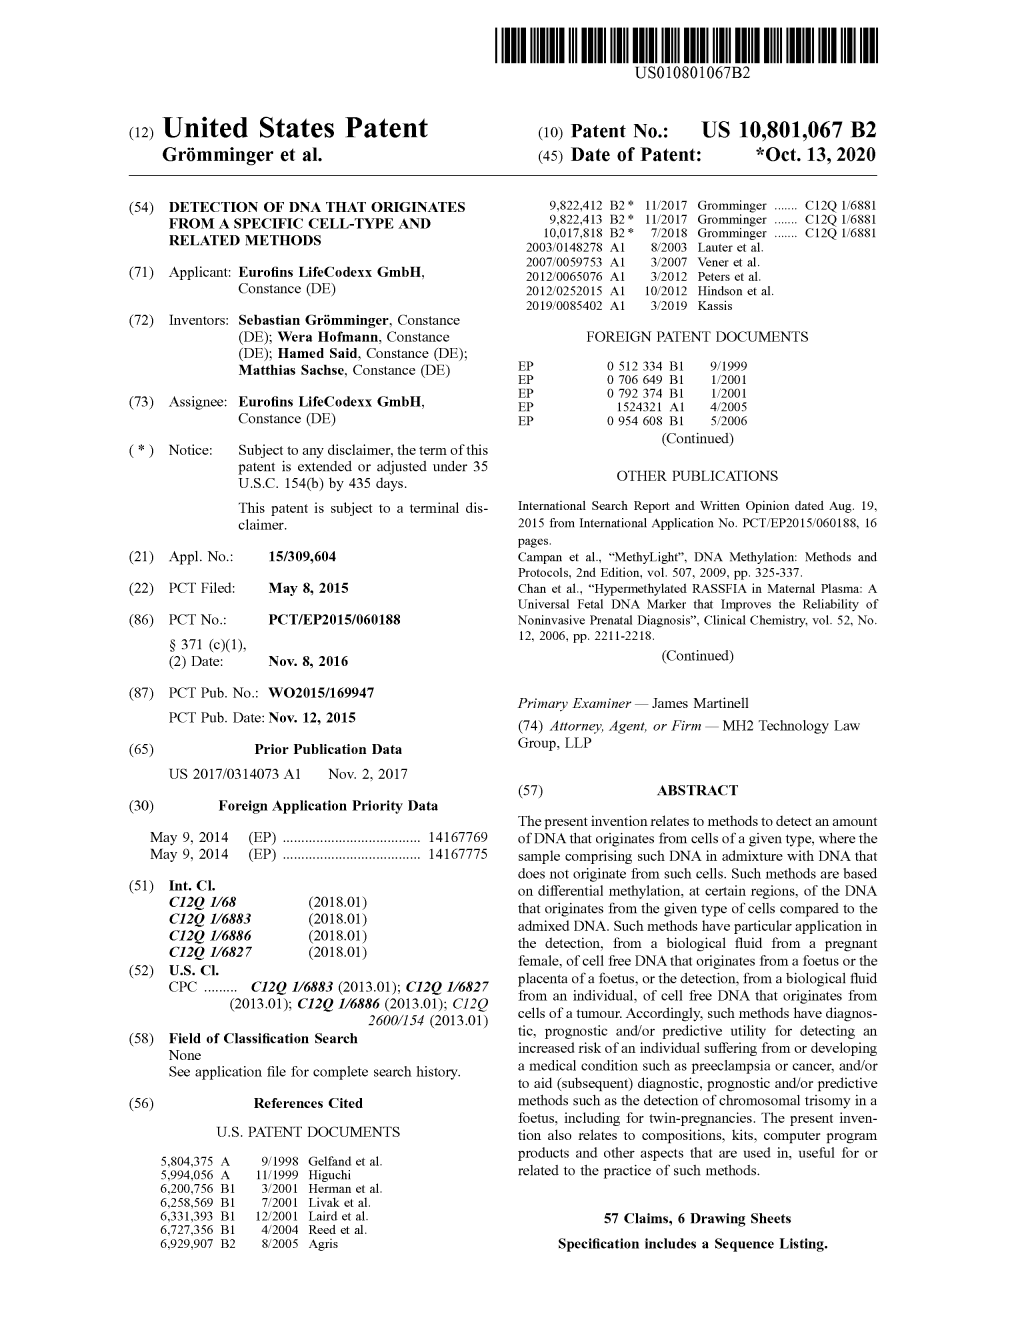 ( 12 ) United States Patent ( 10 ) Patent No .: US 10,801,067 B2 Grömminger Et Al